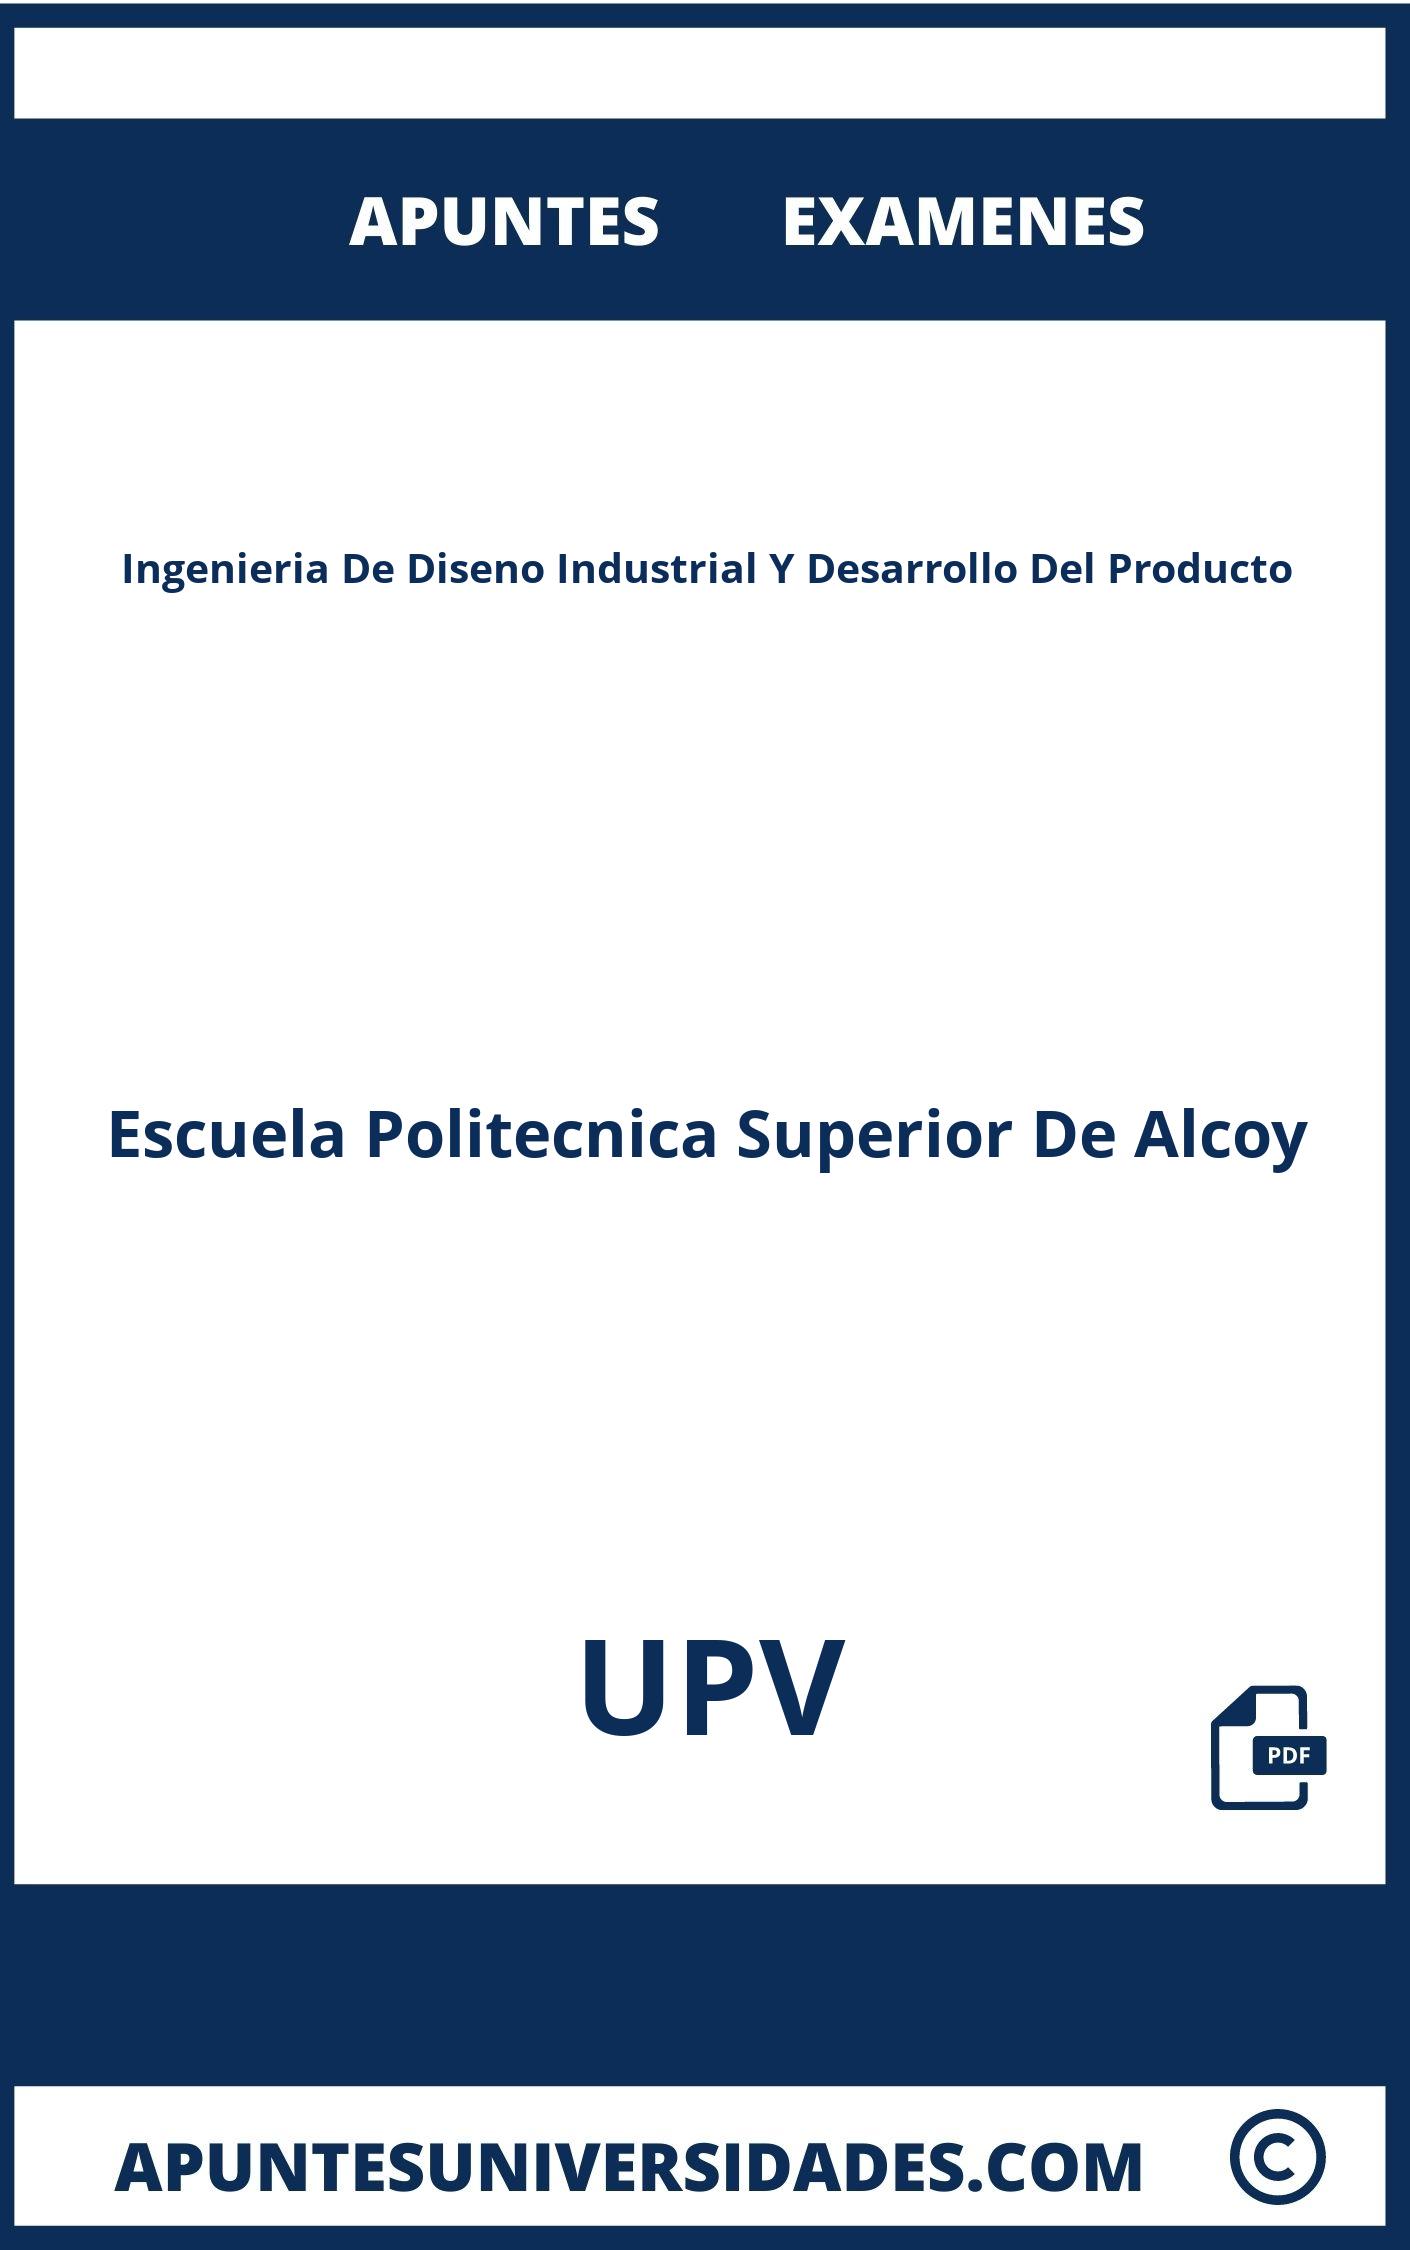 Ingenieria De Diseno Industrial Y Desarrollo Del Producto UPV Apuntes Examenes